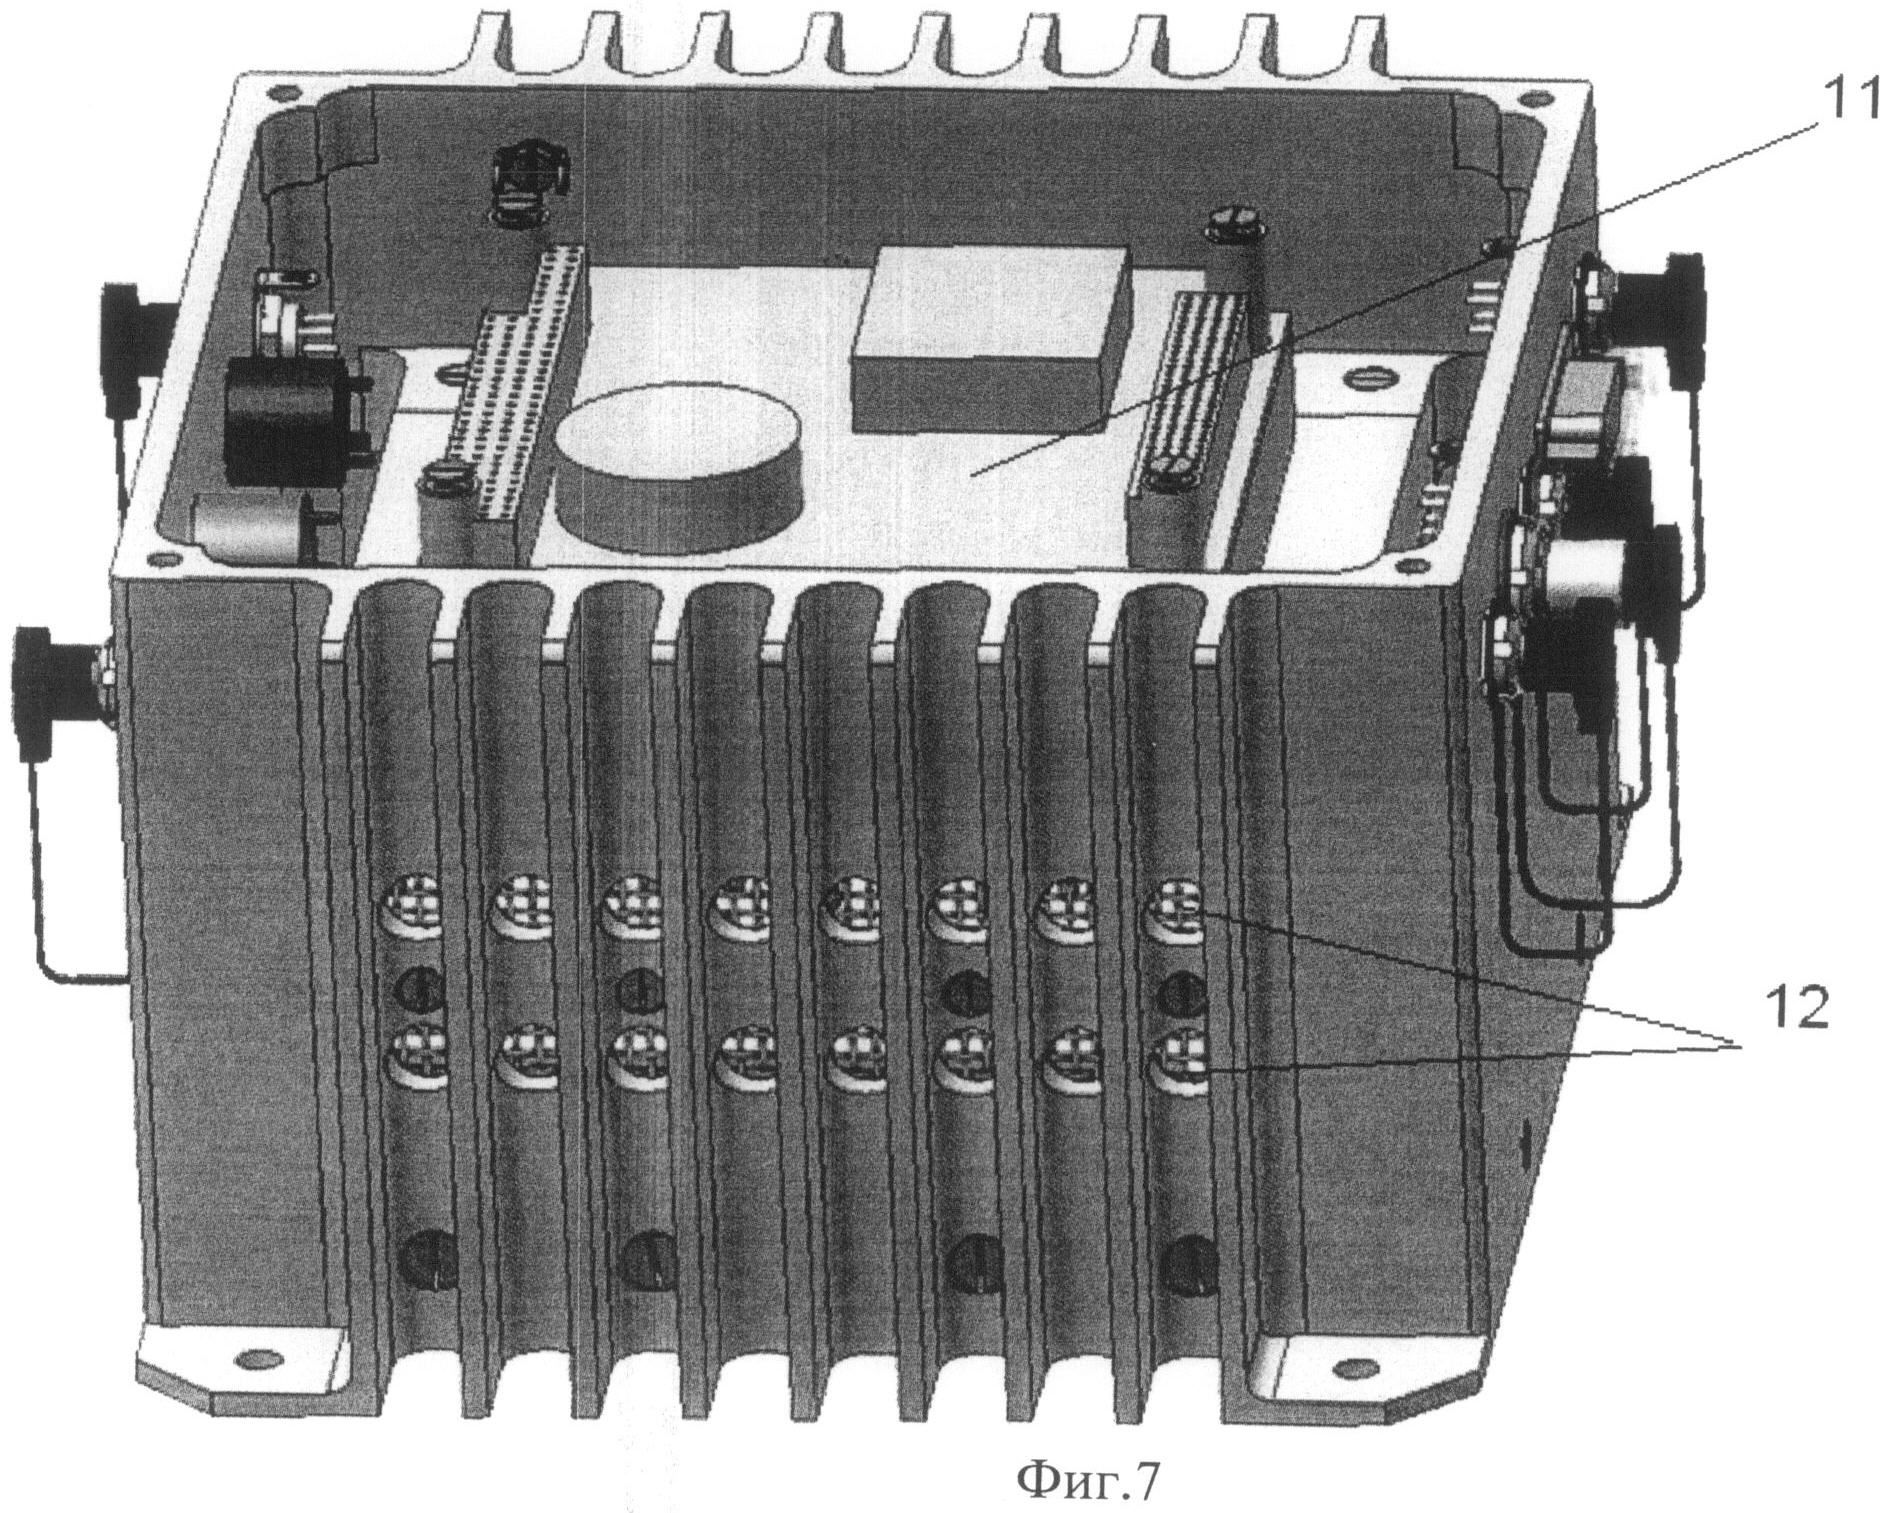 Маршрутный блок. Блоки бортовой РЭА. Блоки РЭА кассетной конструкции. Патент. Бортовой модуль радиоэлектронной аппаратуры. Бортовой электронной аппаратуры кт-254.